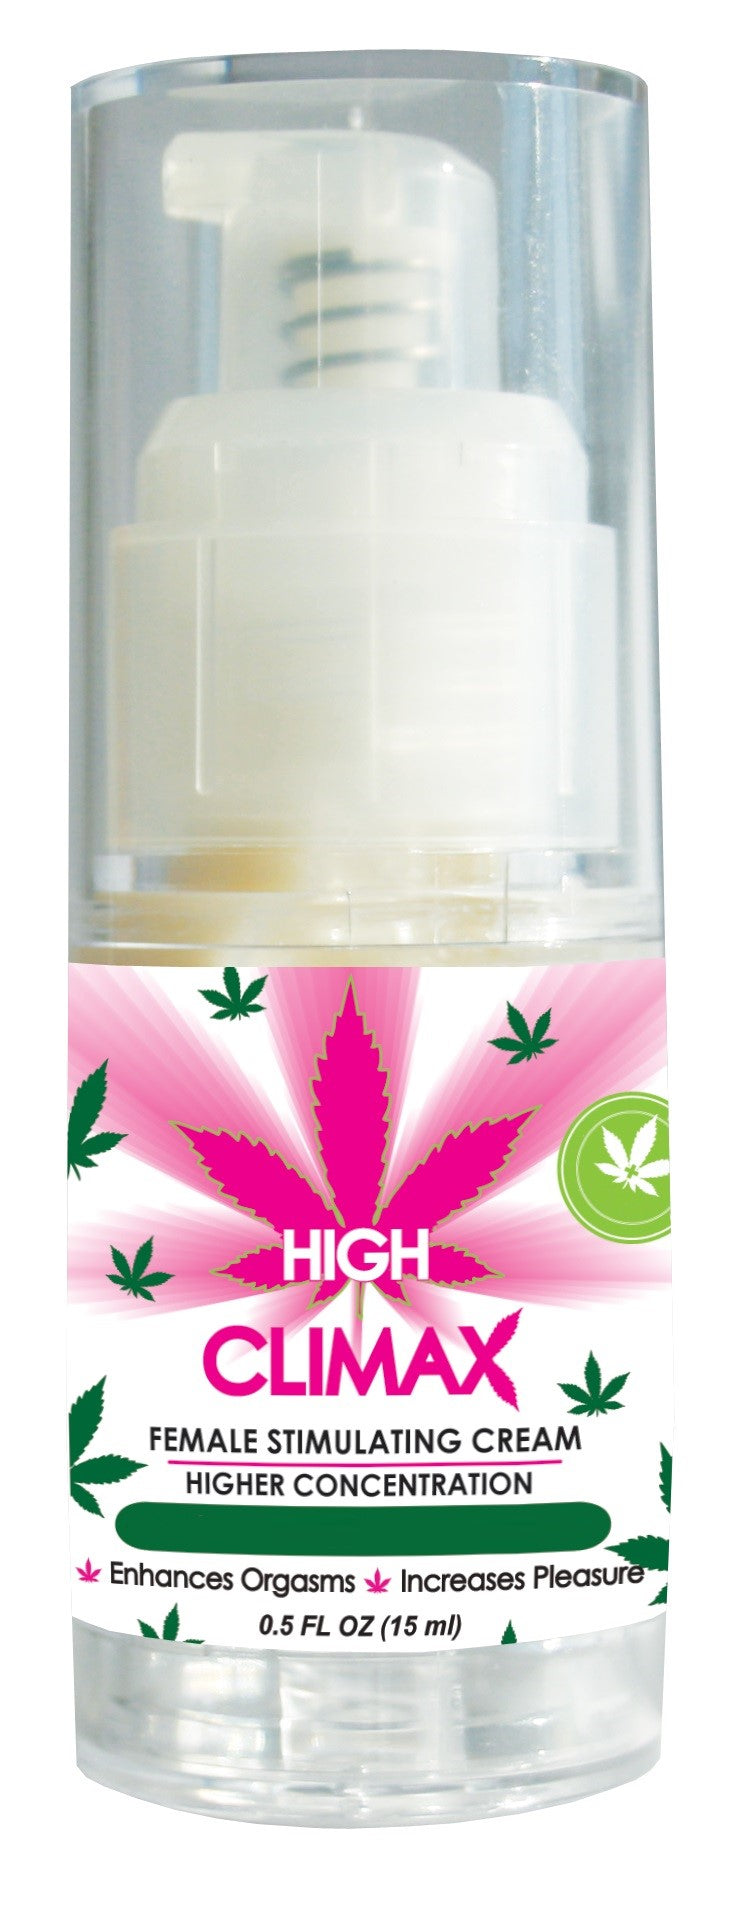 High Climax Female Stimulating Cream - 0.5 Fl. Oz. / 15 ml BA-HC05